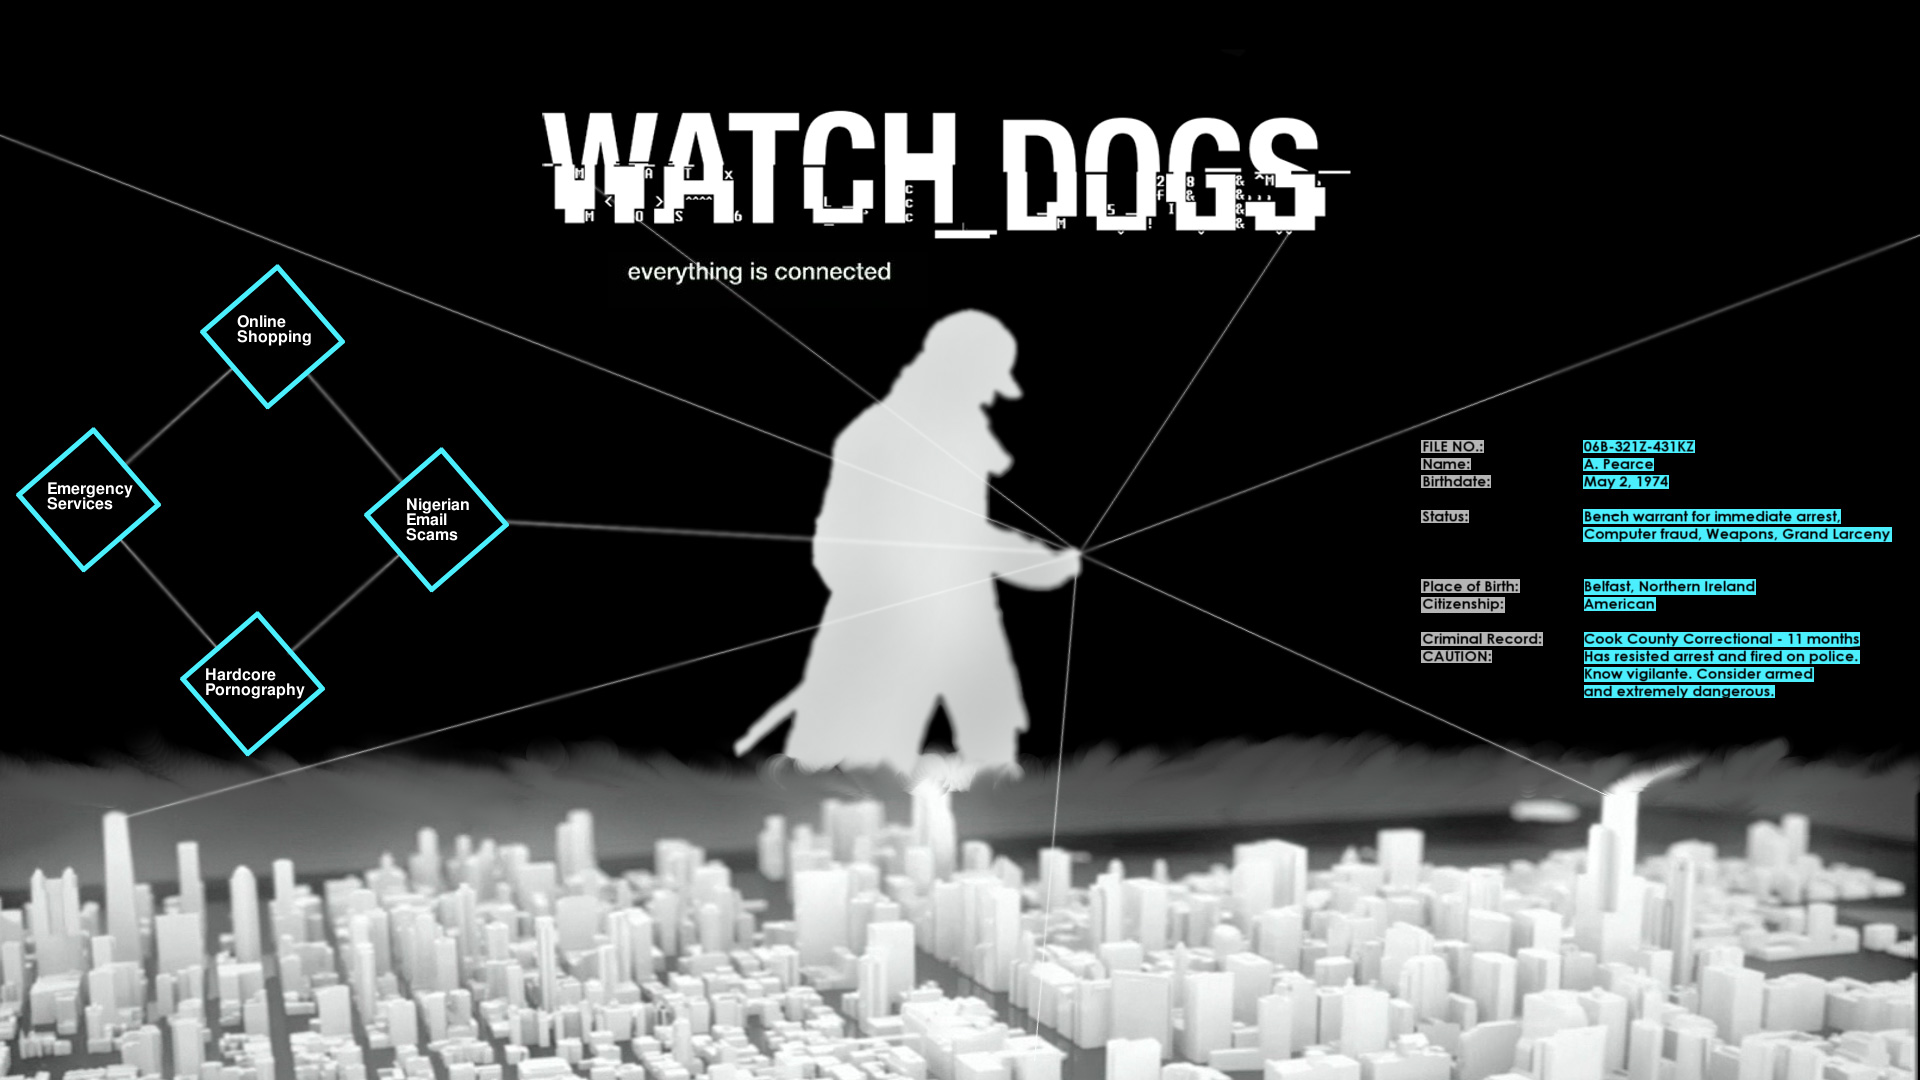 “Thành phố thông minh” trong Watch dogs: Góc nhìn chuyên gia